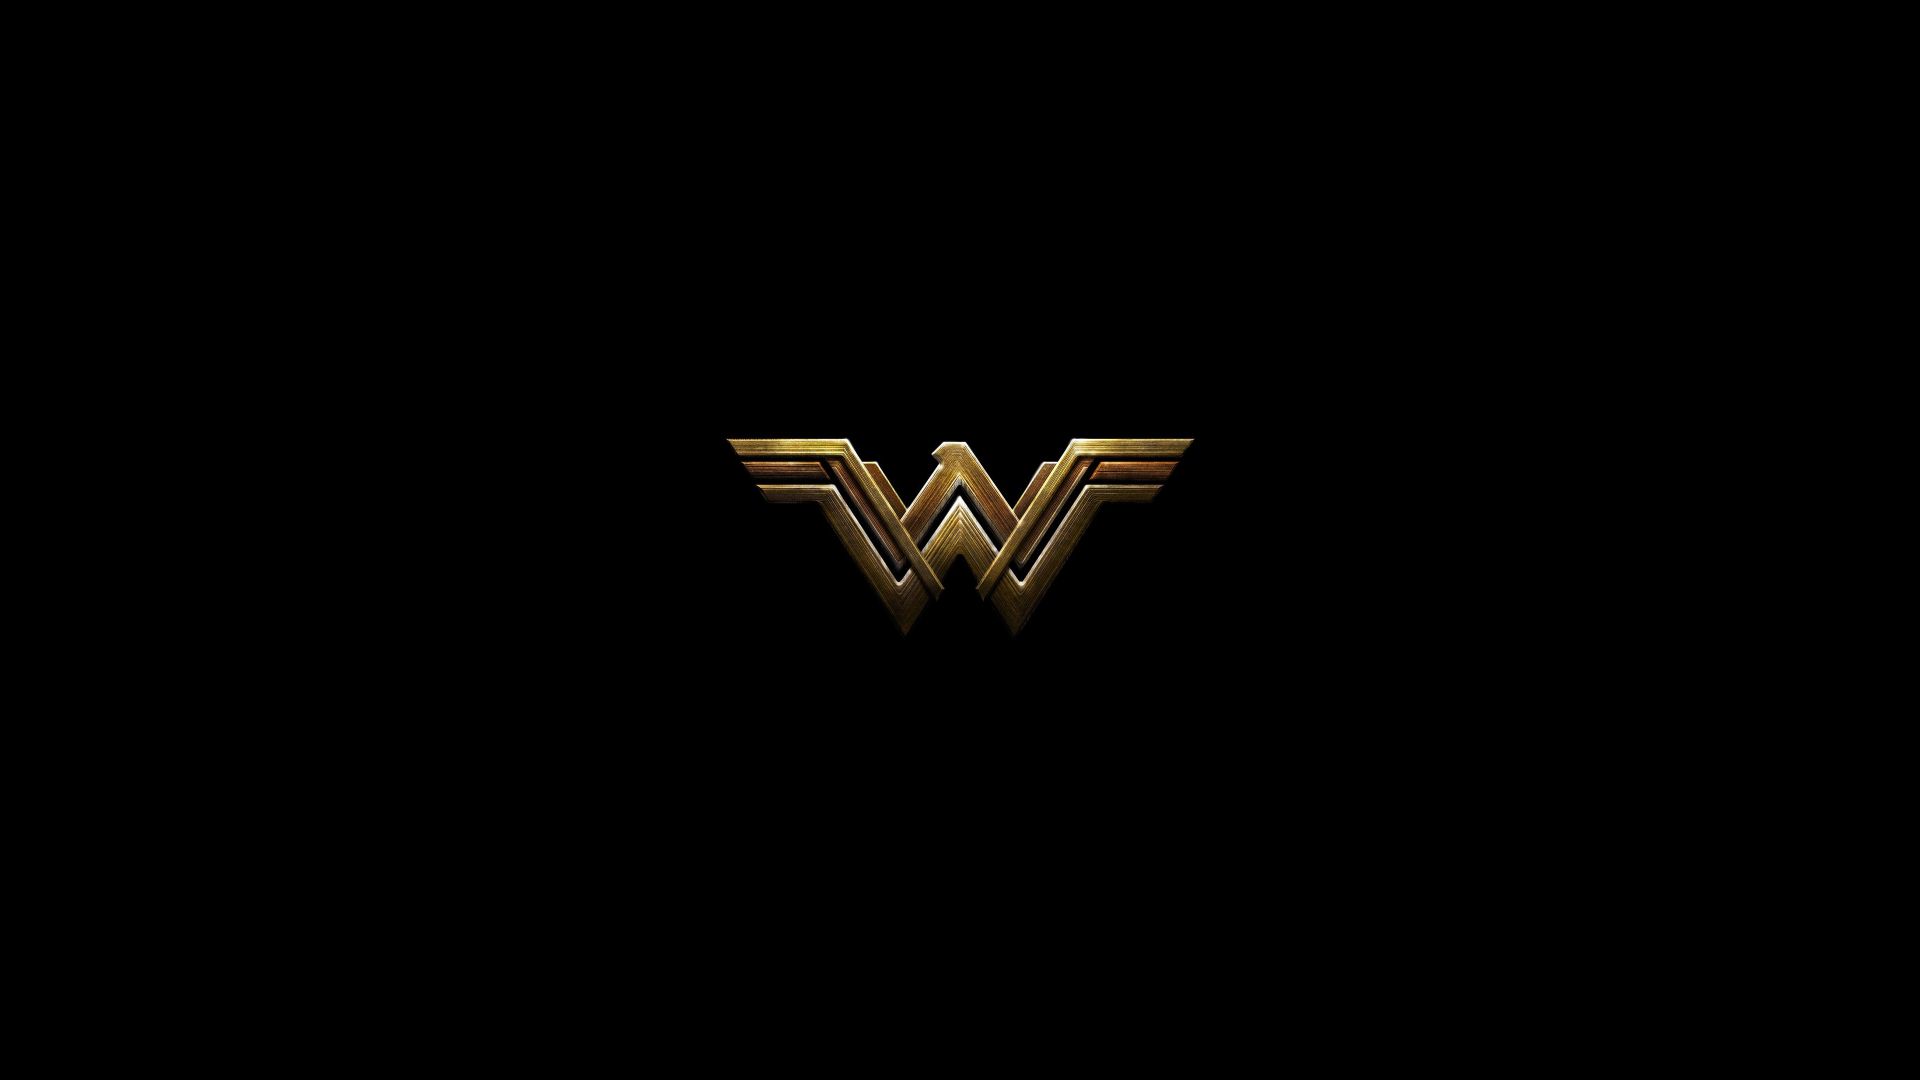 Wallpaper Wonder woman dark minimal logo